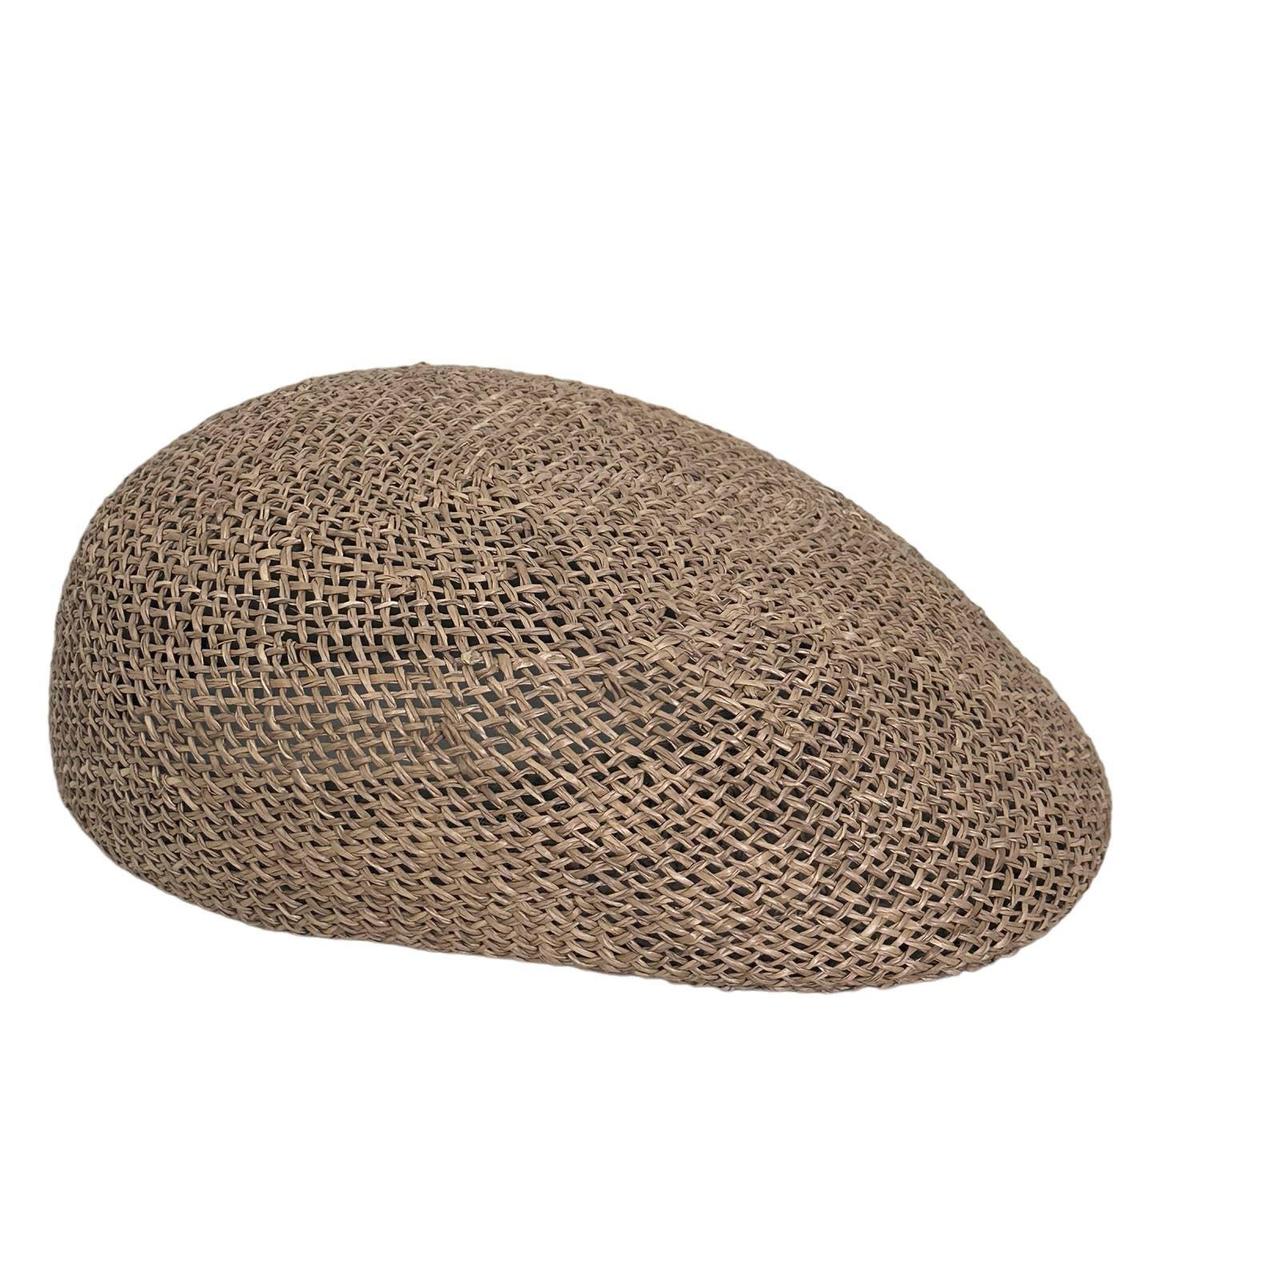 Country Gentleman Men's Brown Hat (7)